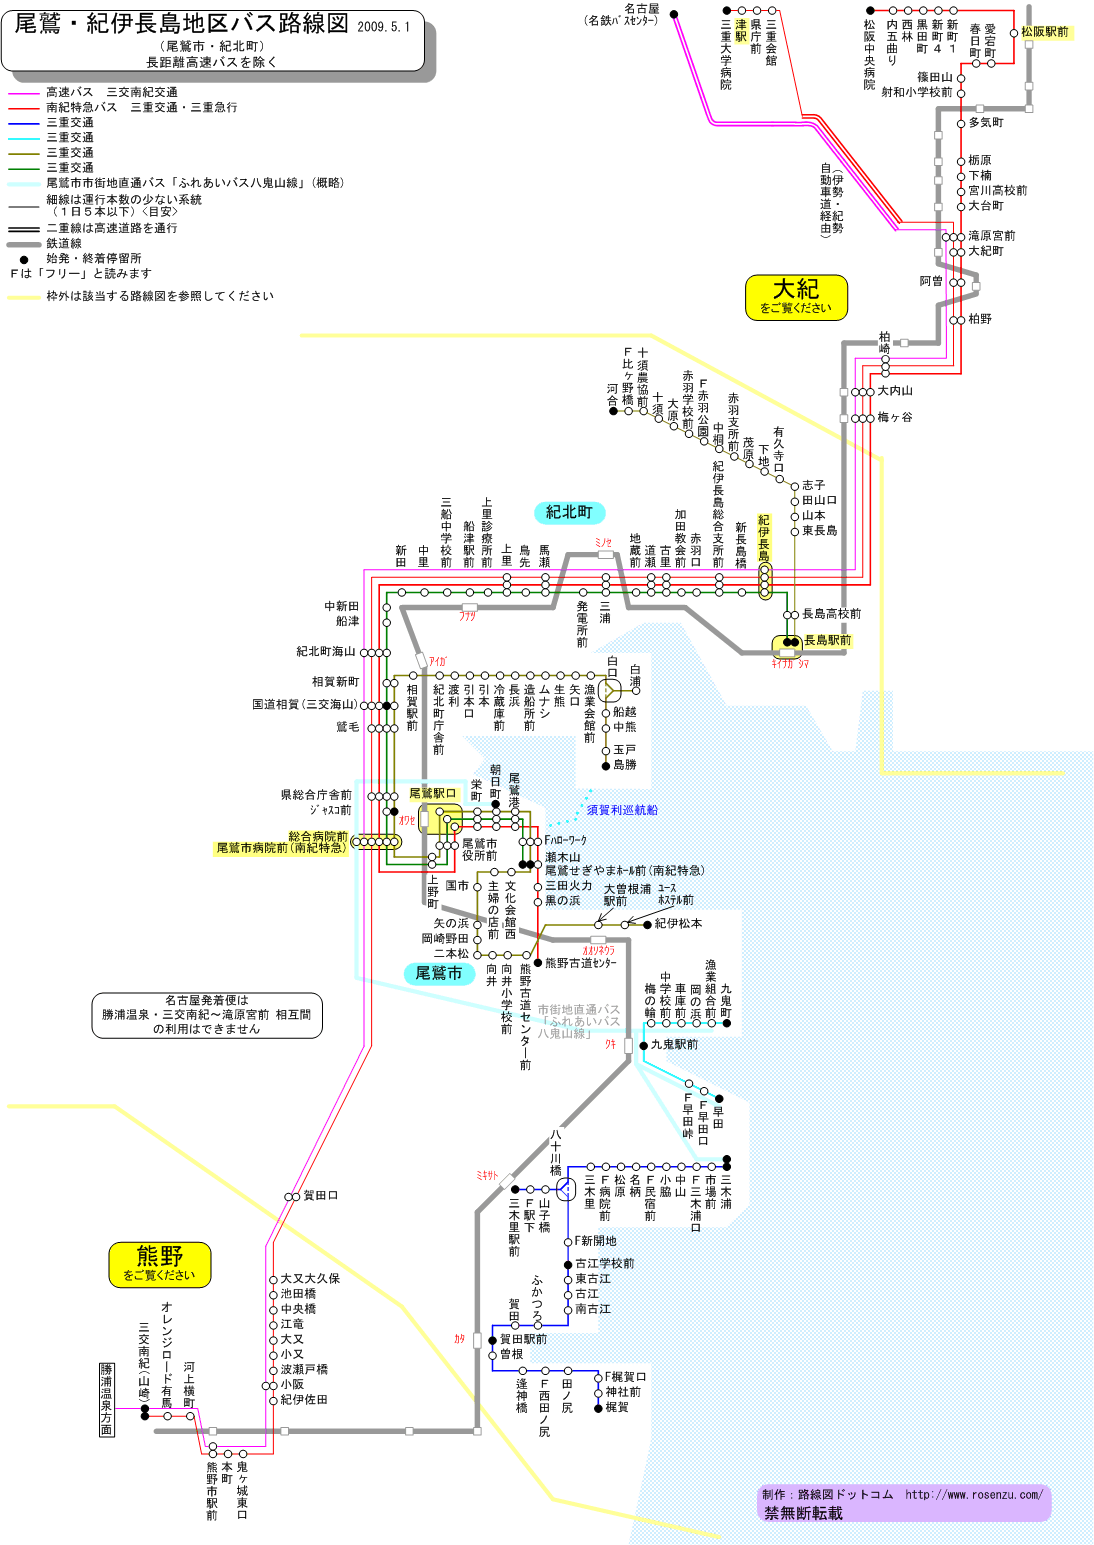 尾鷲・紀伊長島地区バス路線図